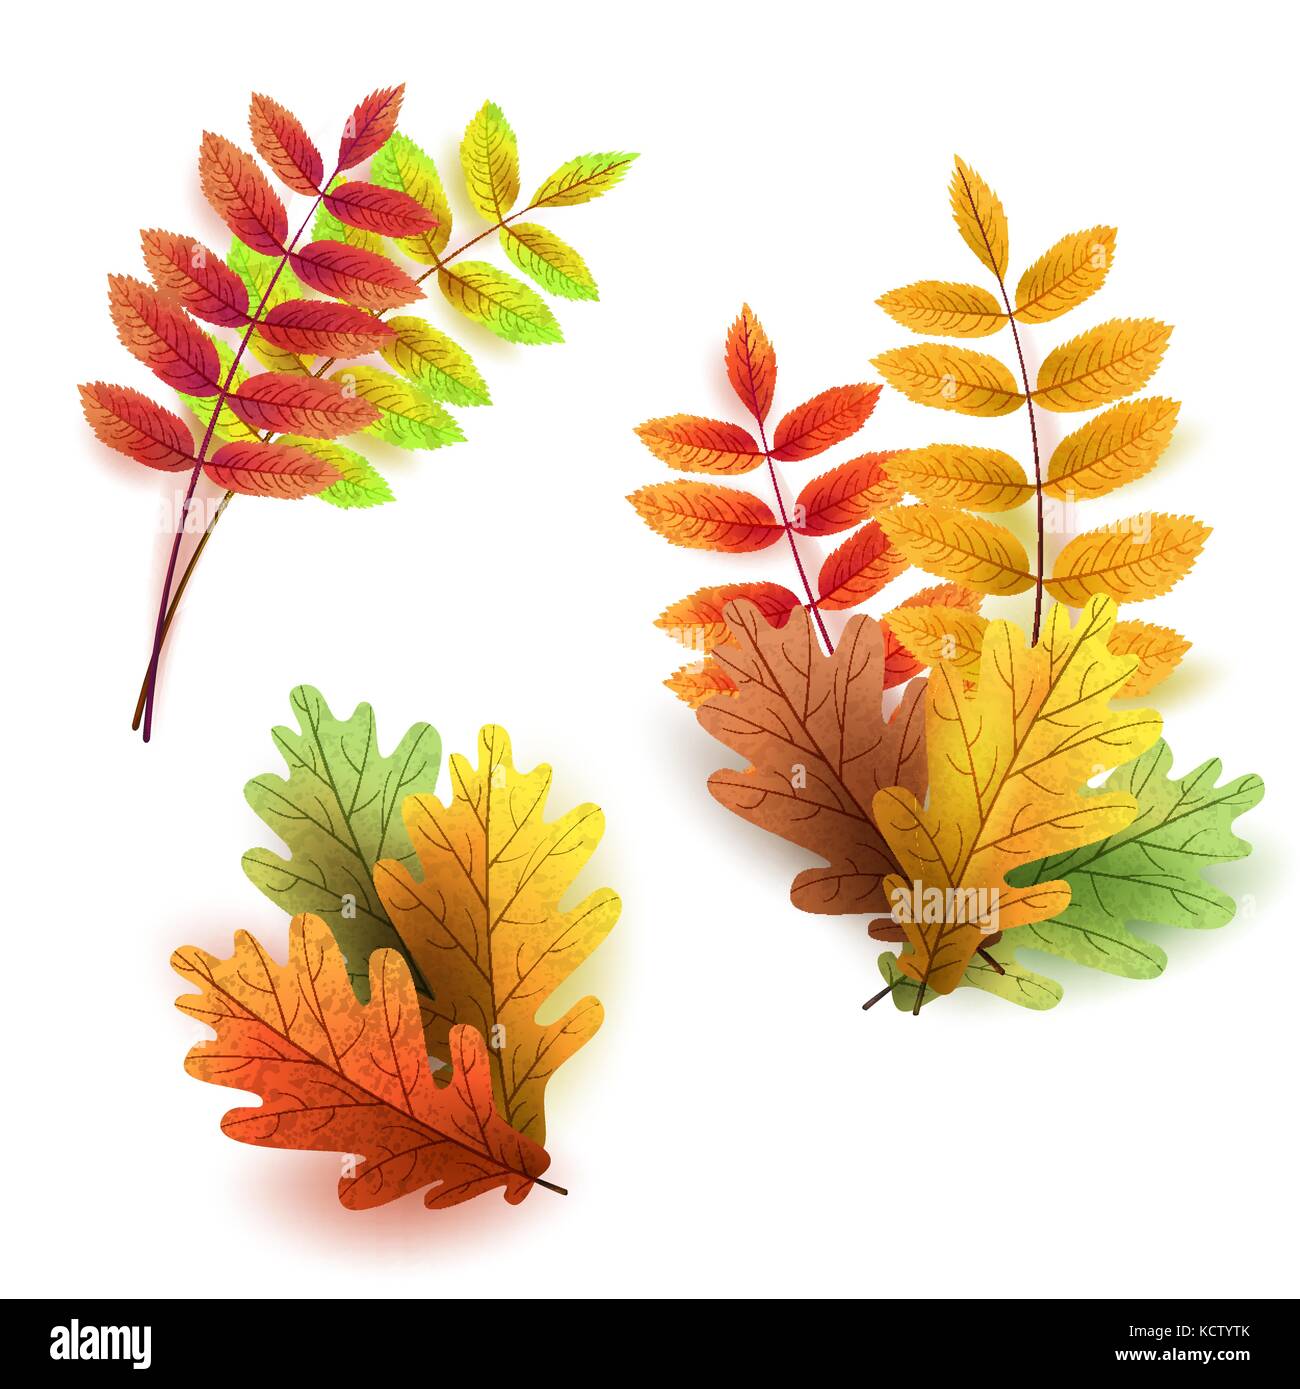 Rowan leaf Stock Vector Images - Alamy